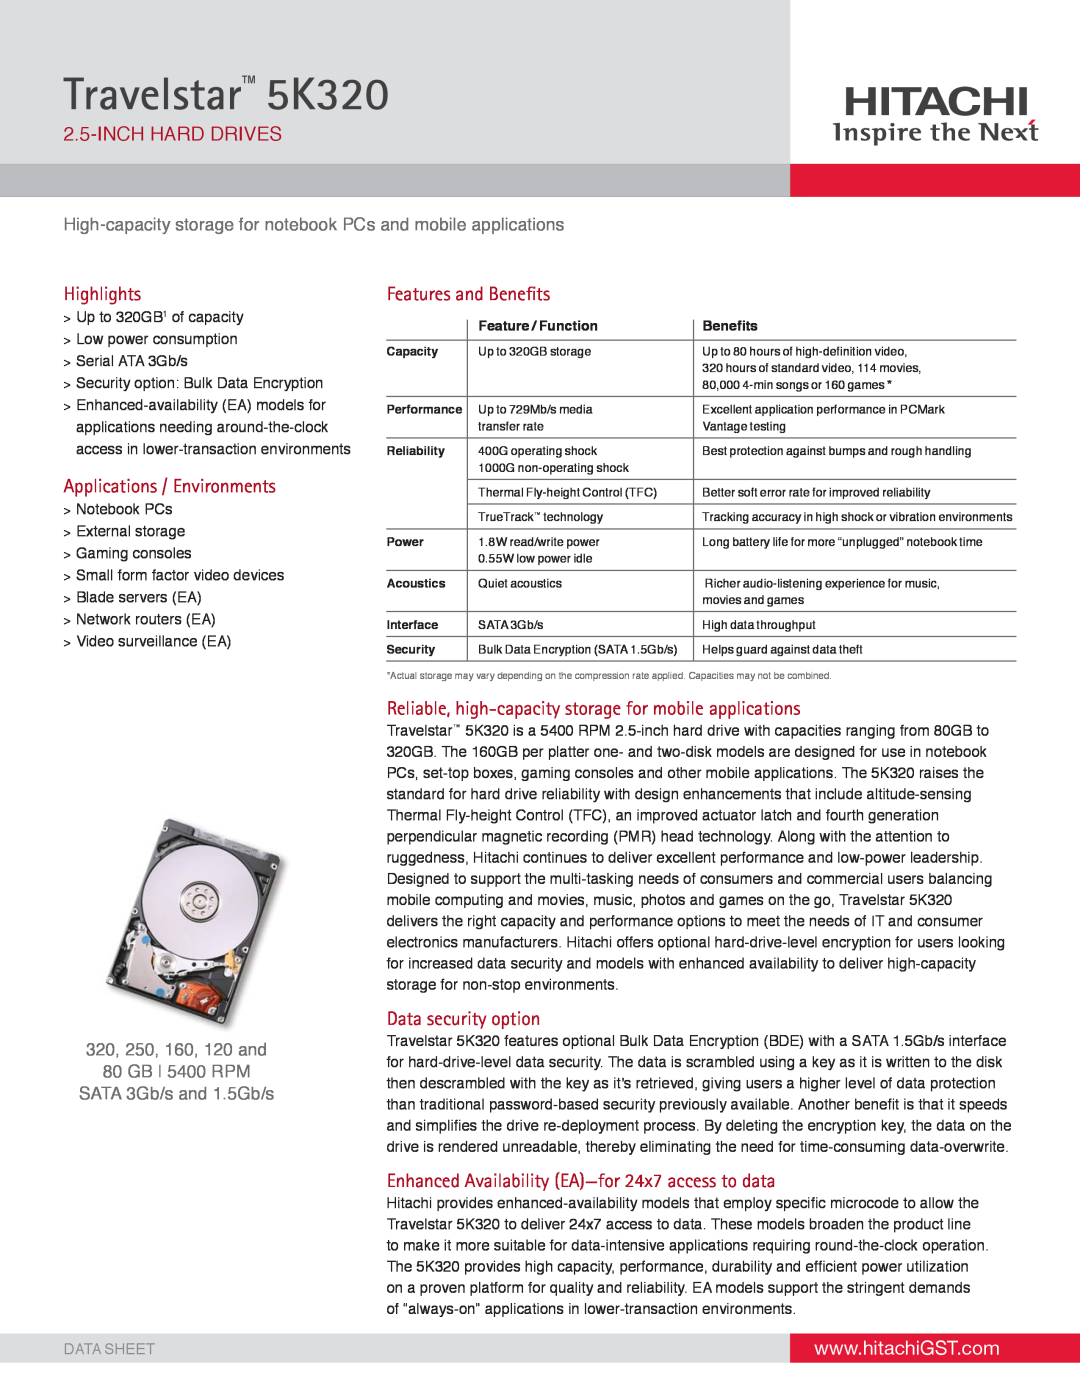 Hitachi HTS542580K9SA00 manual Inchhard Drives, Highlights, Applications / Environments, Features and Beneﬁts, Data Sheet 